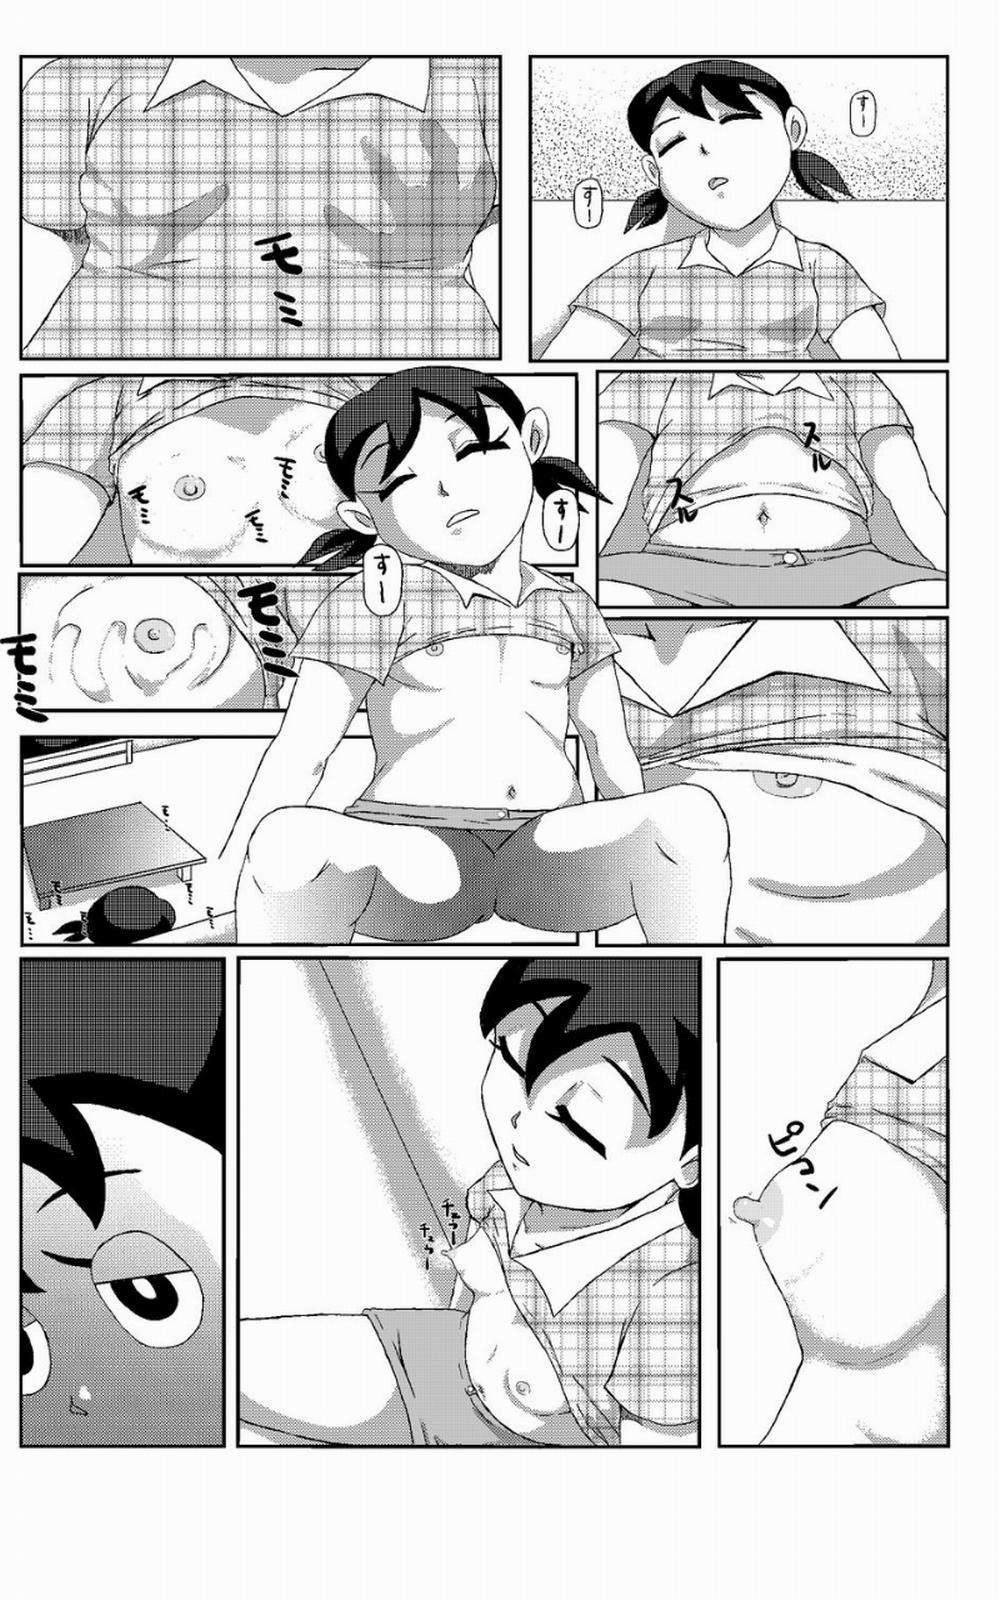 Tuyển Tập Doraemon Doujinshi 18+ Chương 5 xuka b troll Trang 5